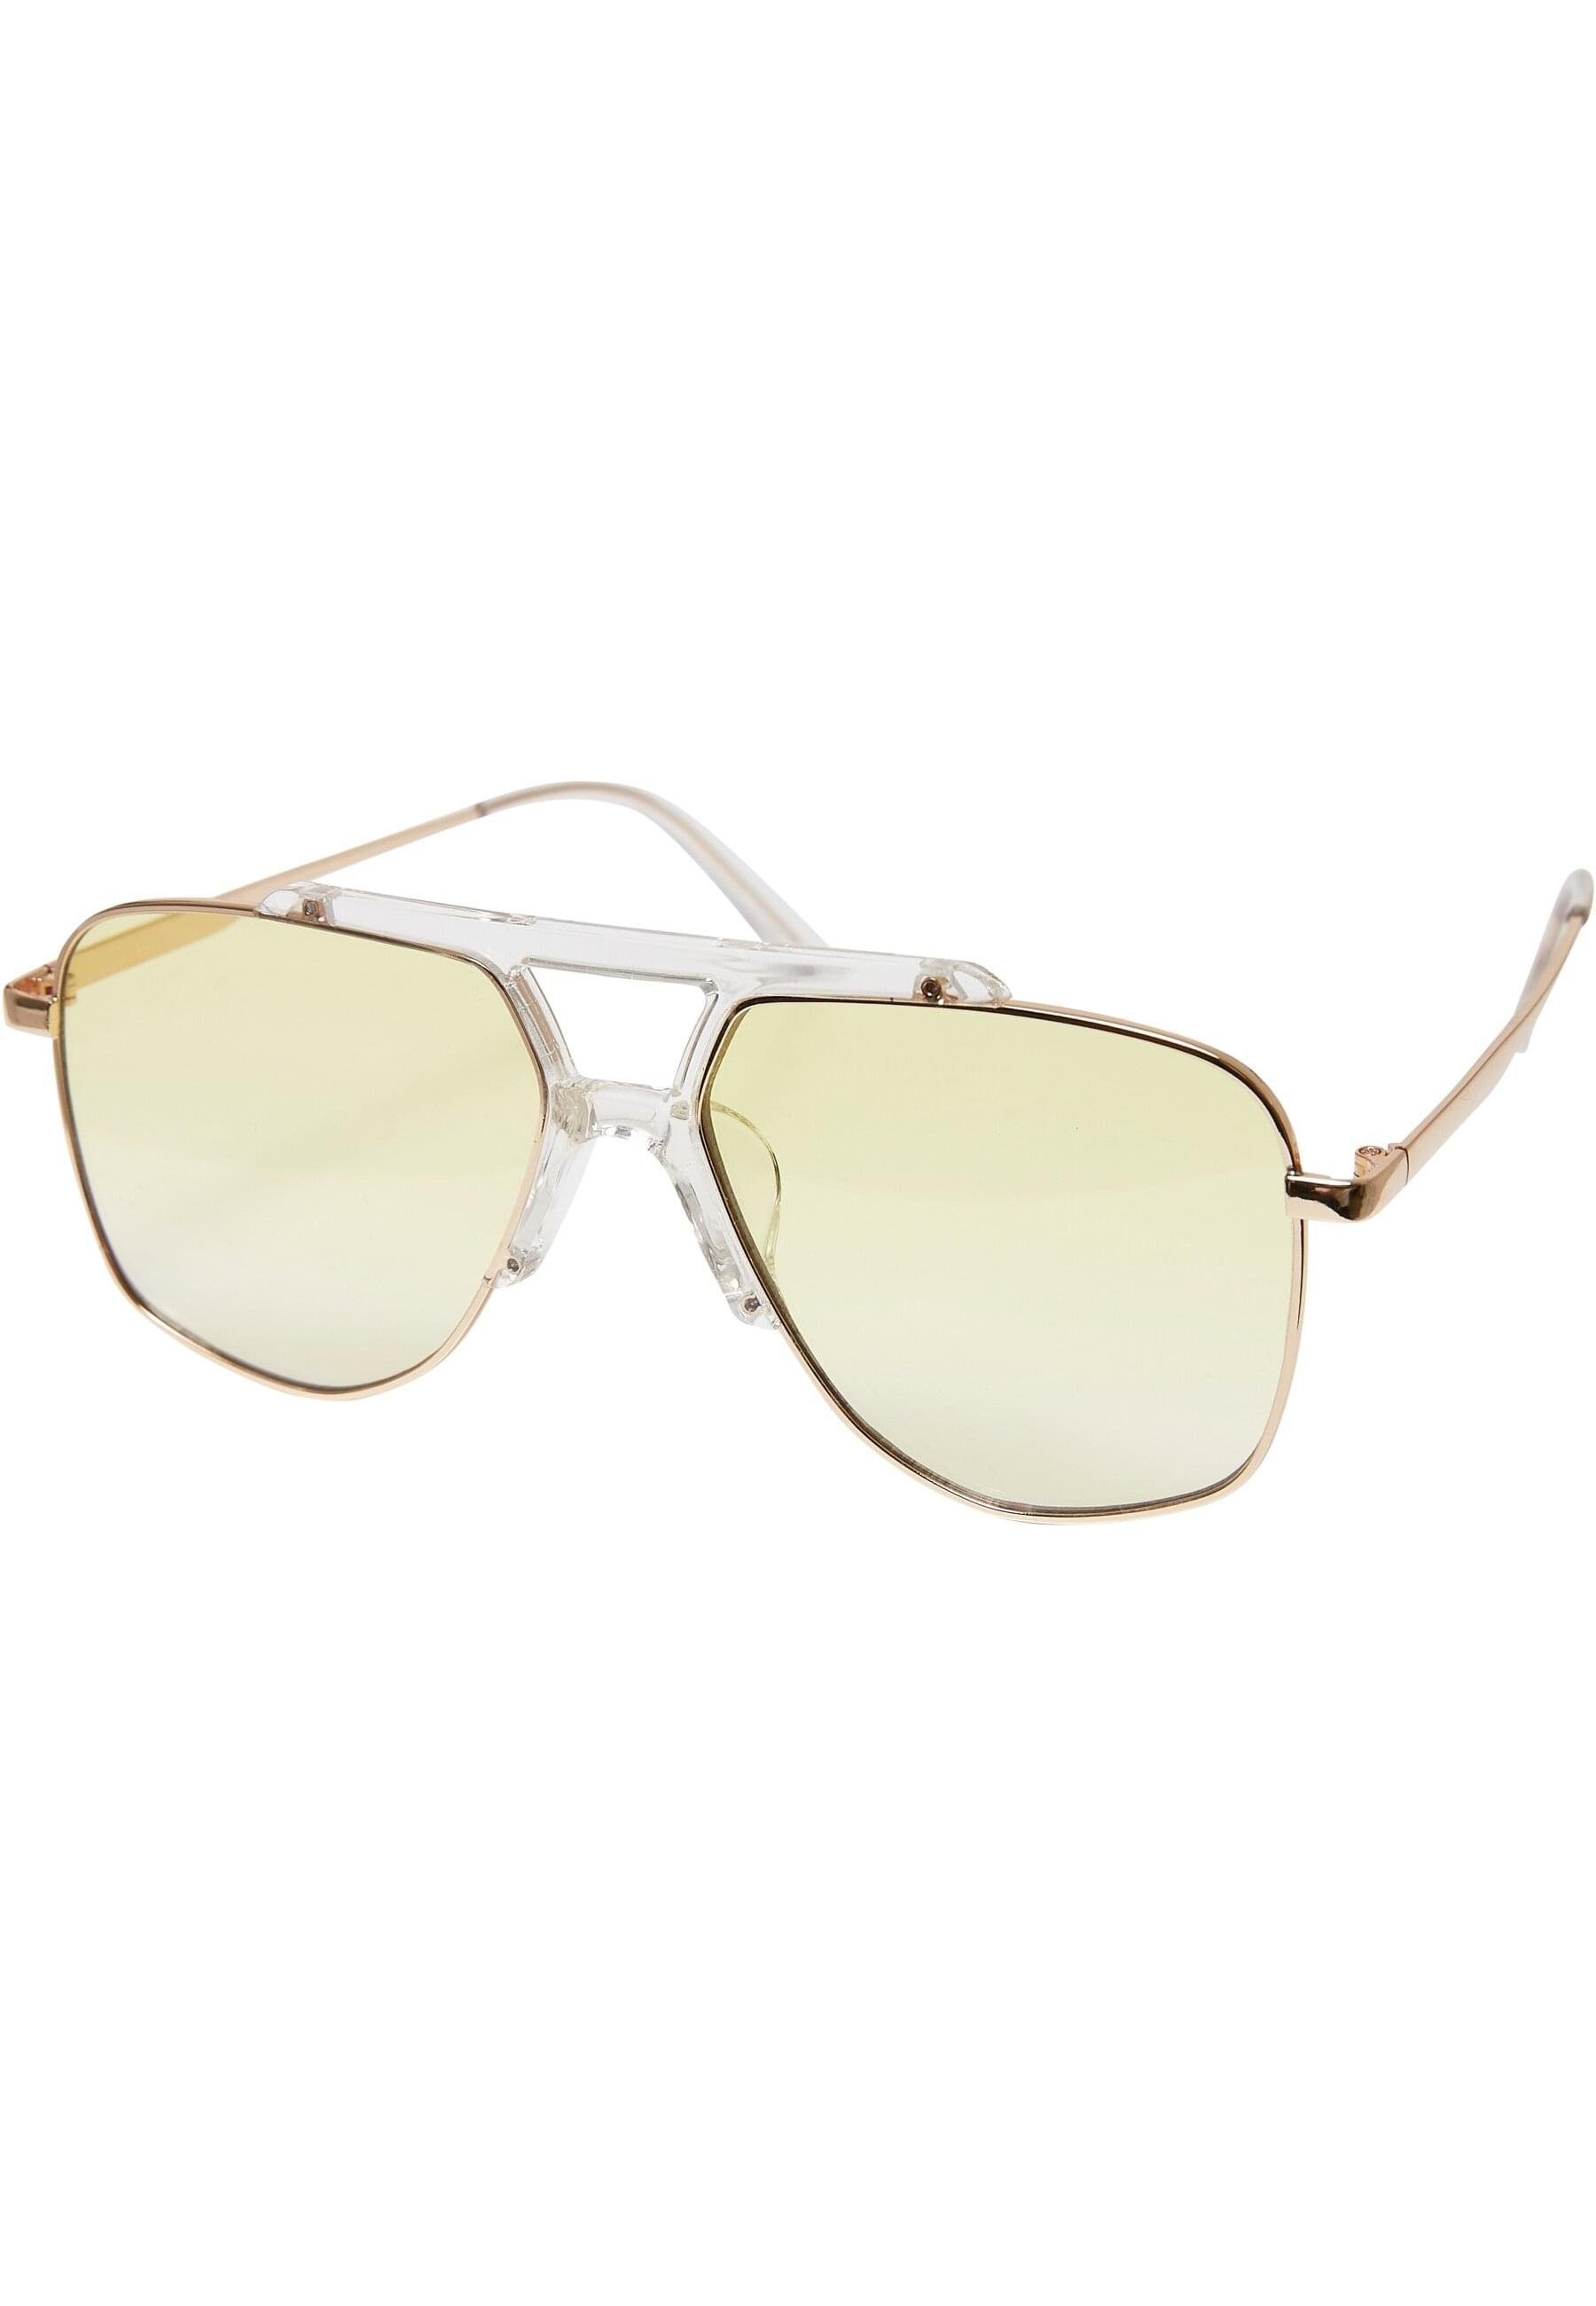 Unisex Sonnenbrille URBAN Sunglasses Tropez CLASSICS transparent/gold Saint